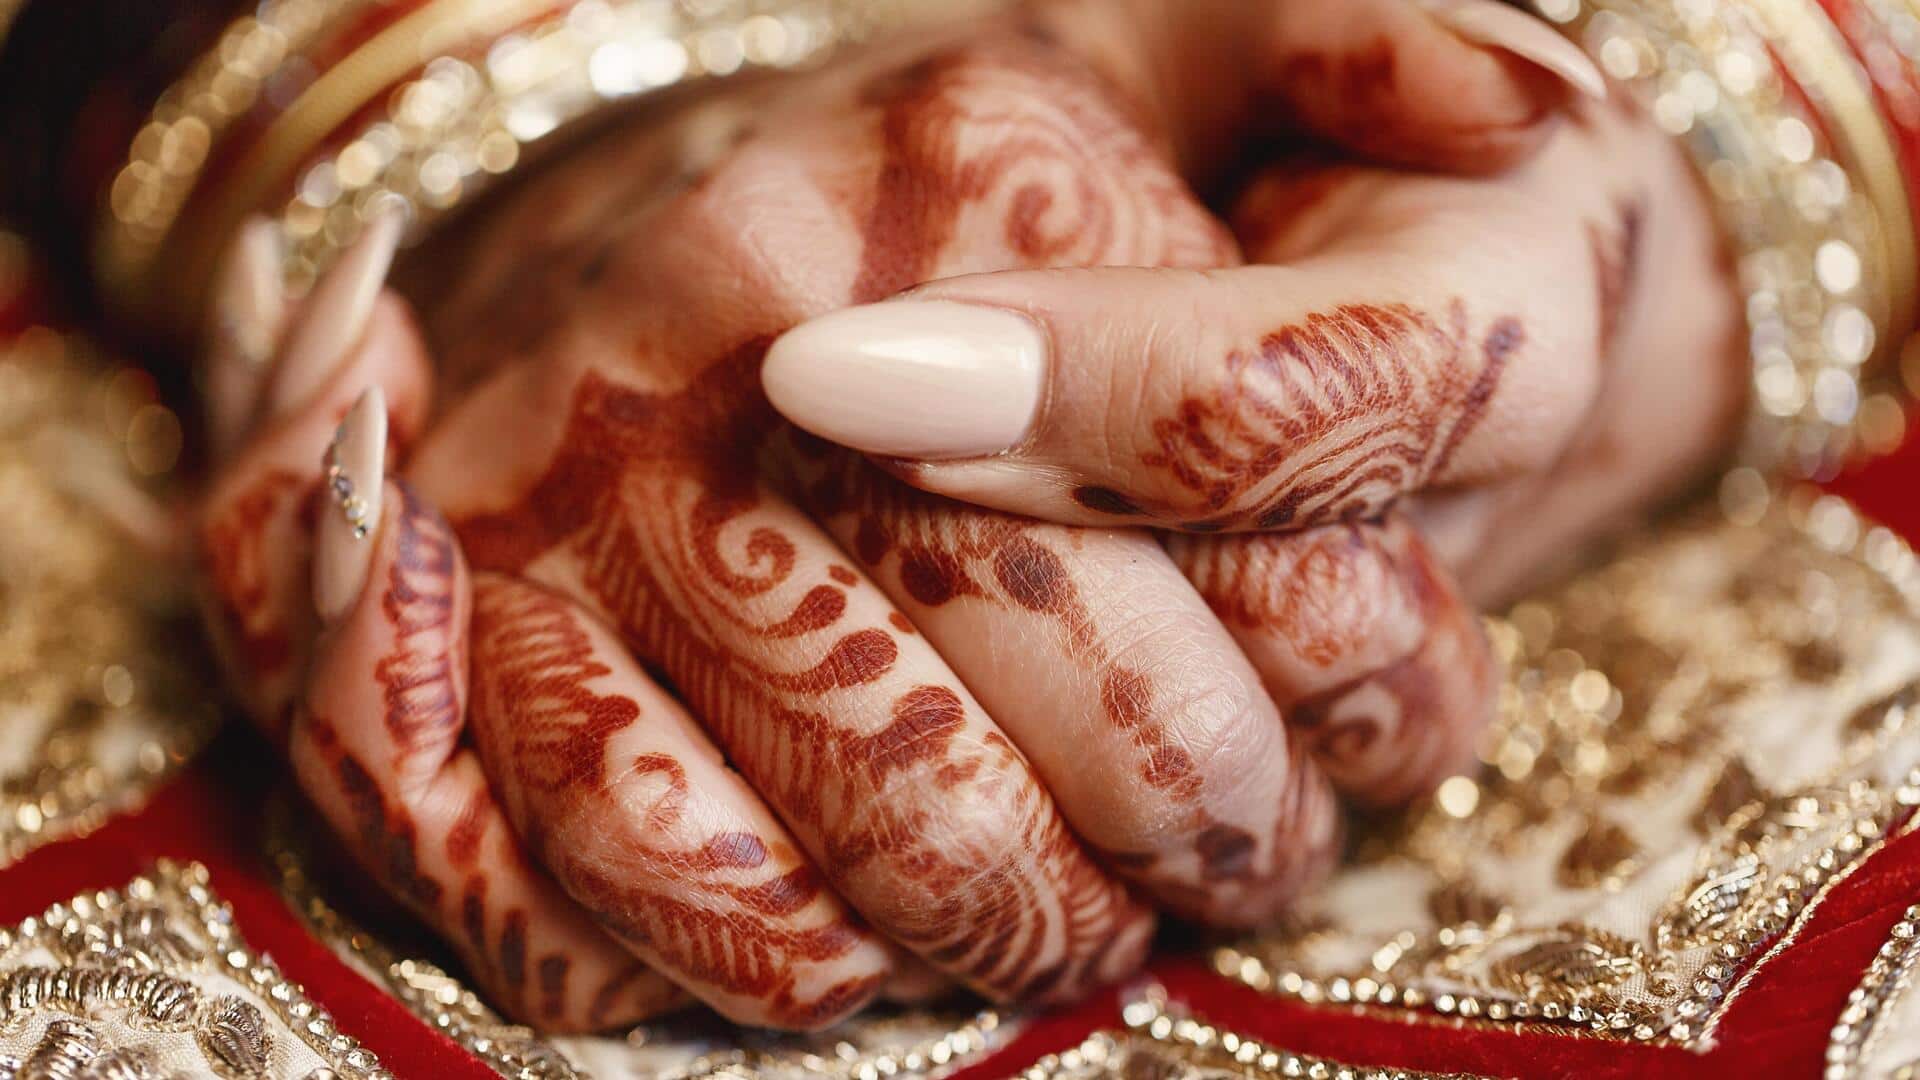 भोपाल में 12 वर्षीय बच्ची का 40,000 रुपये में सौदा कर शादी का प्रयास, 5 गिरफ्तार